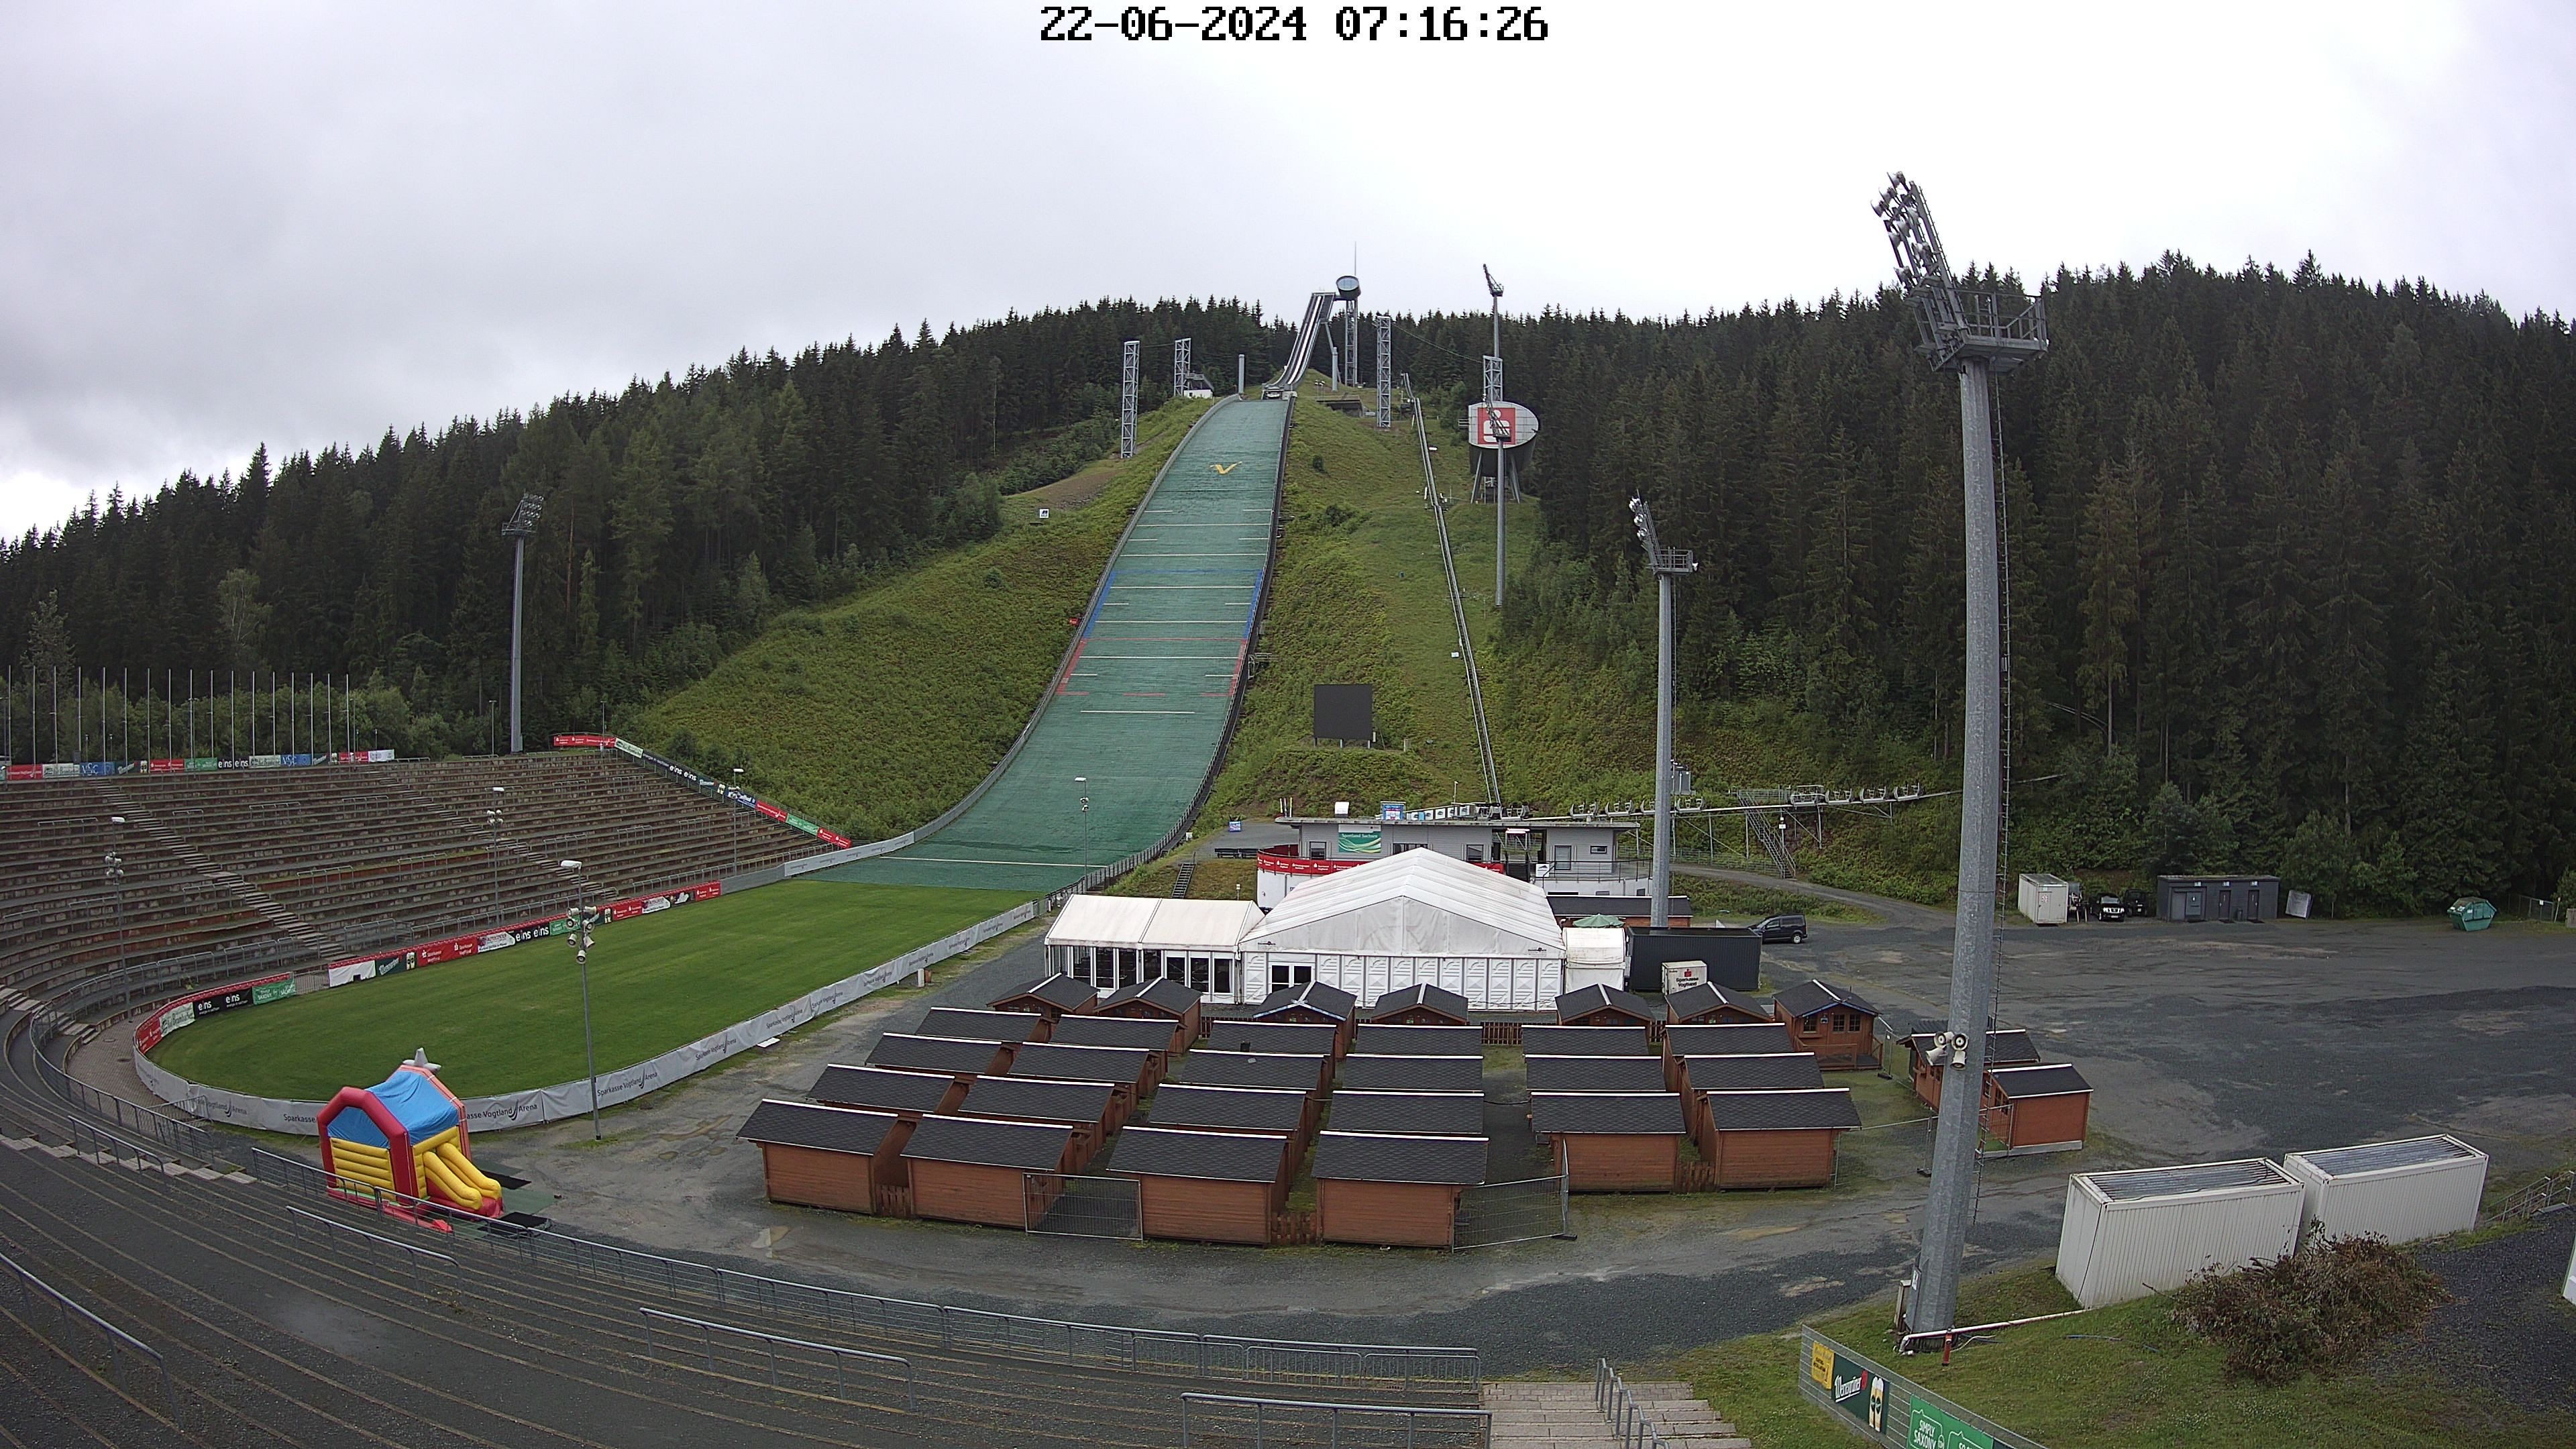 Webcam Ski Jumping Venue at Vogtland Arena 667 m..